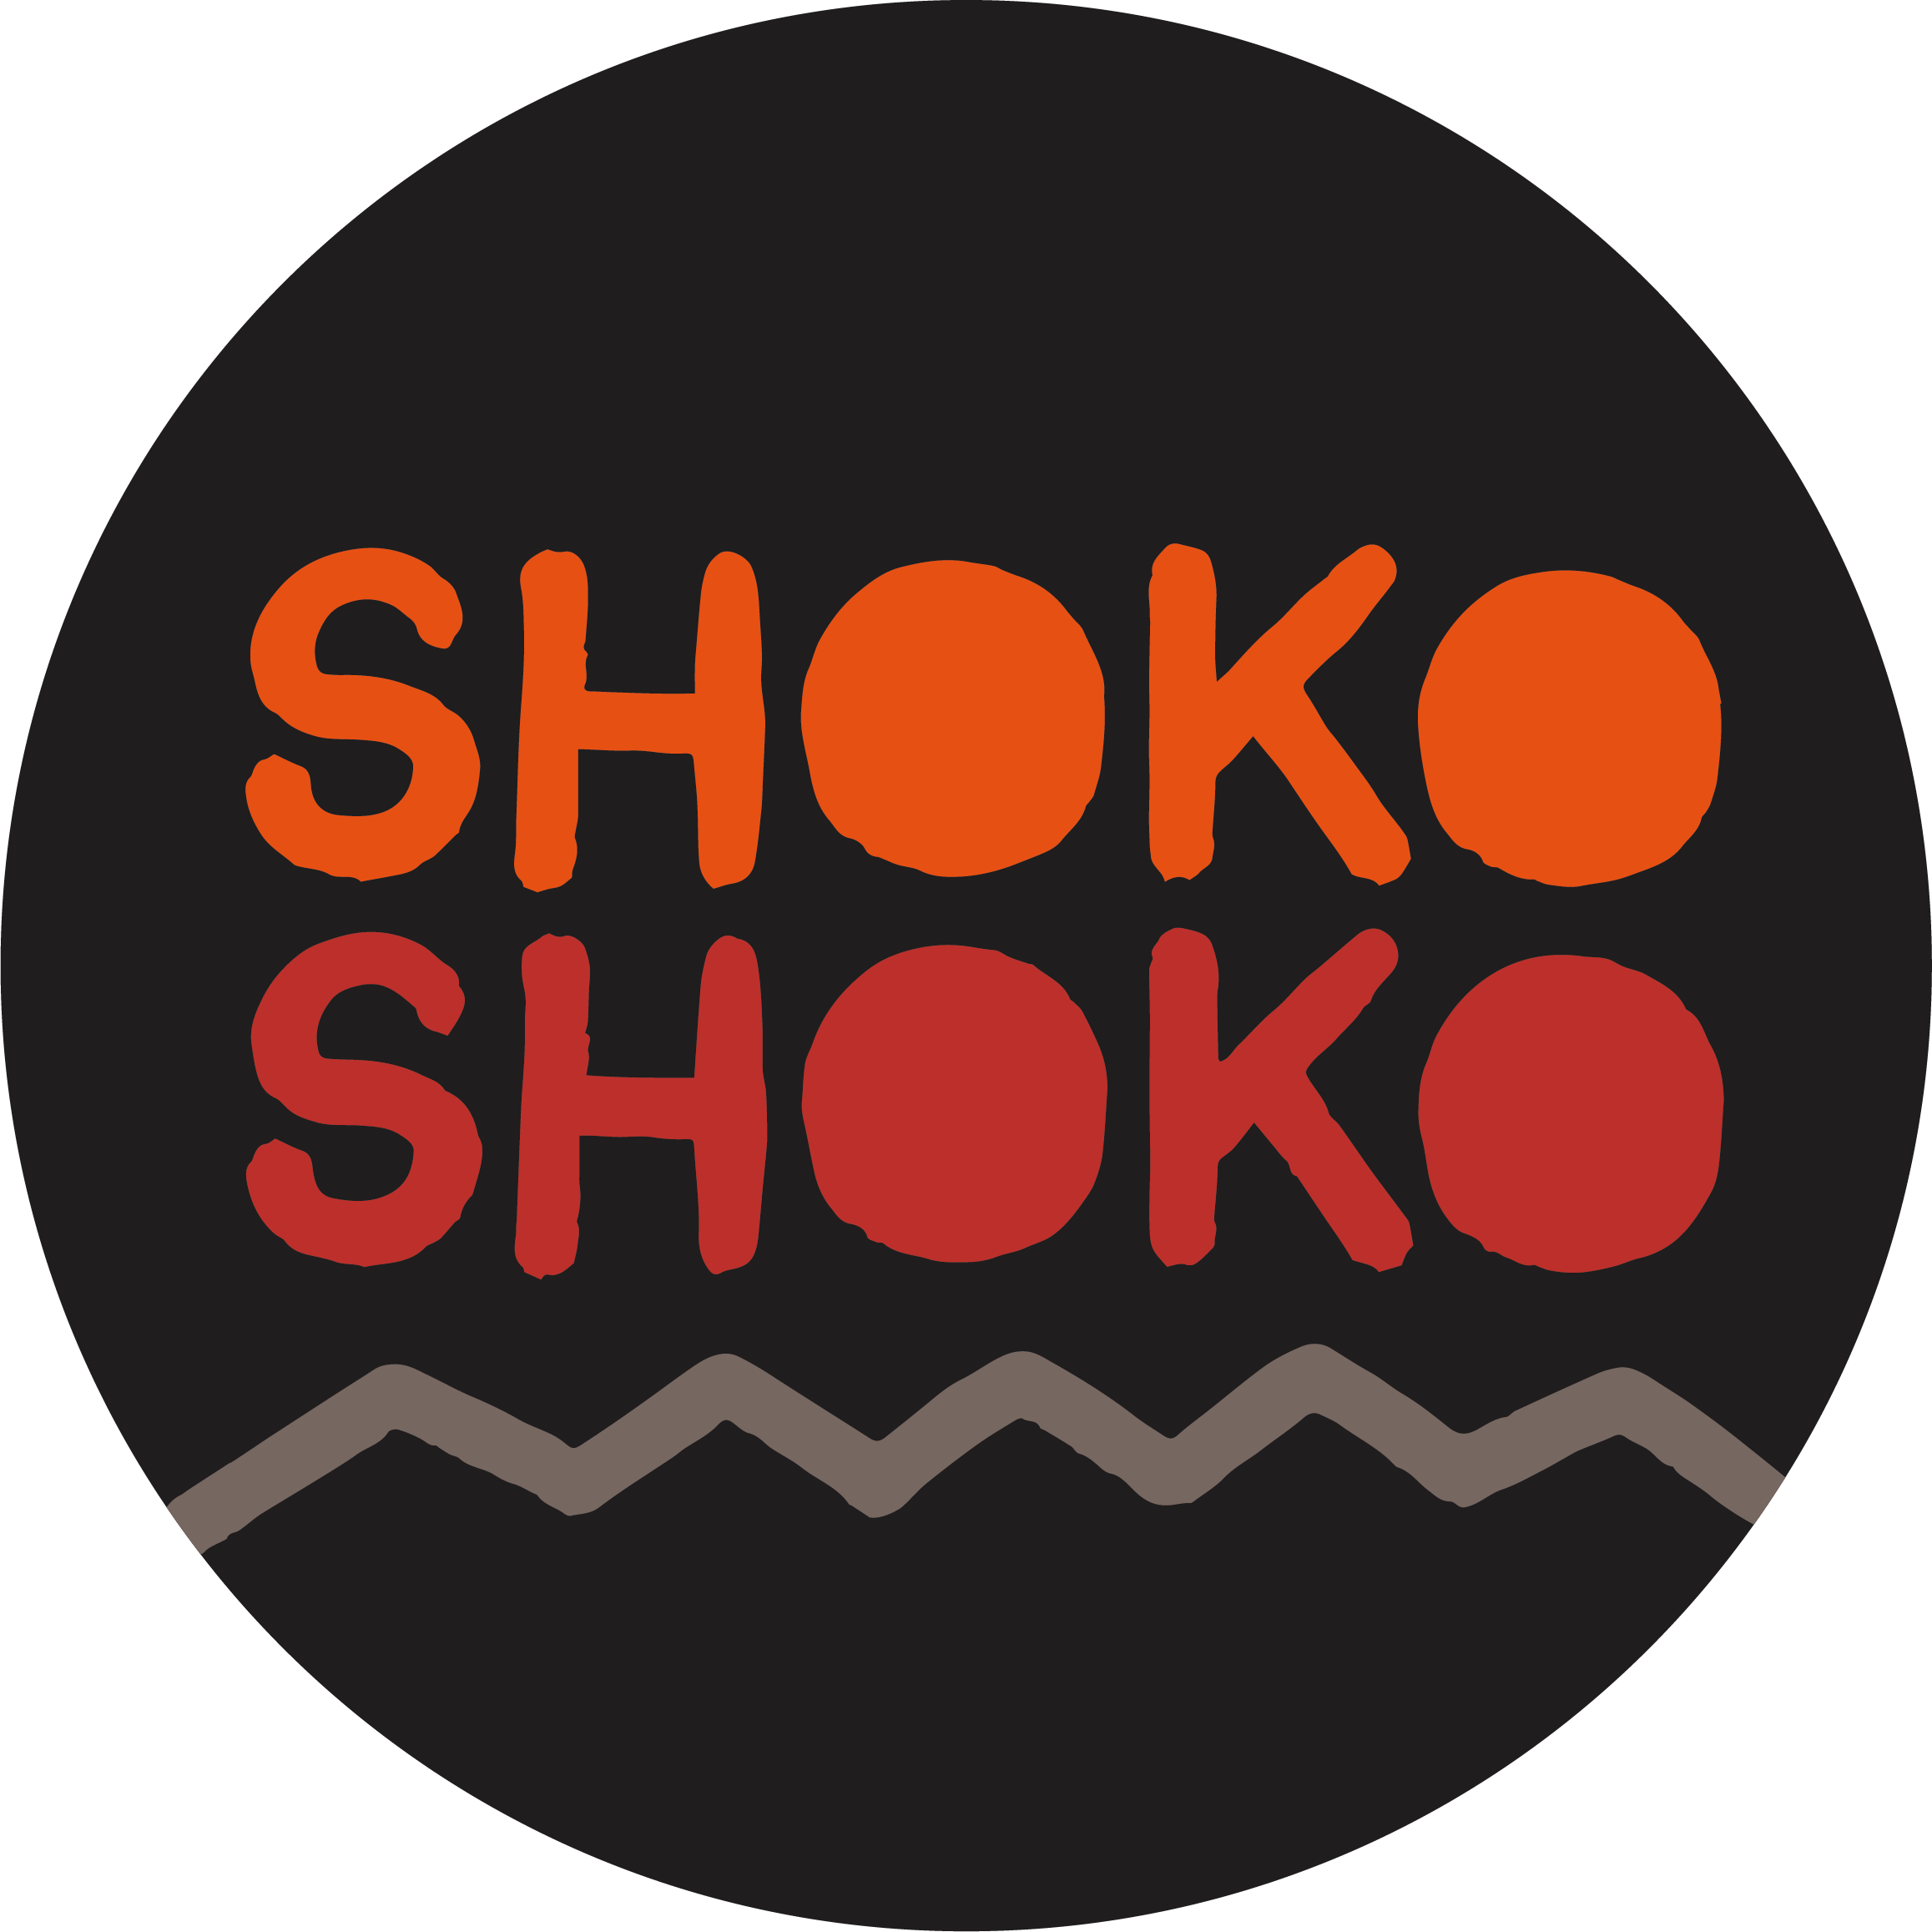 Shoko Shoko